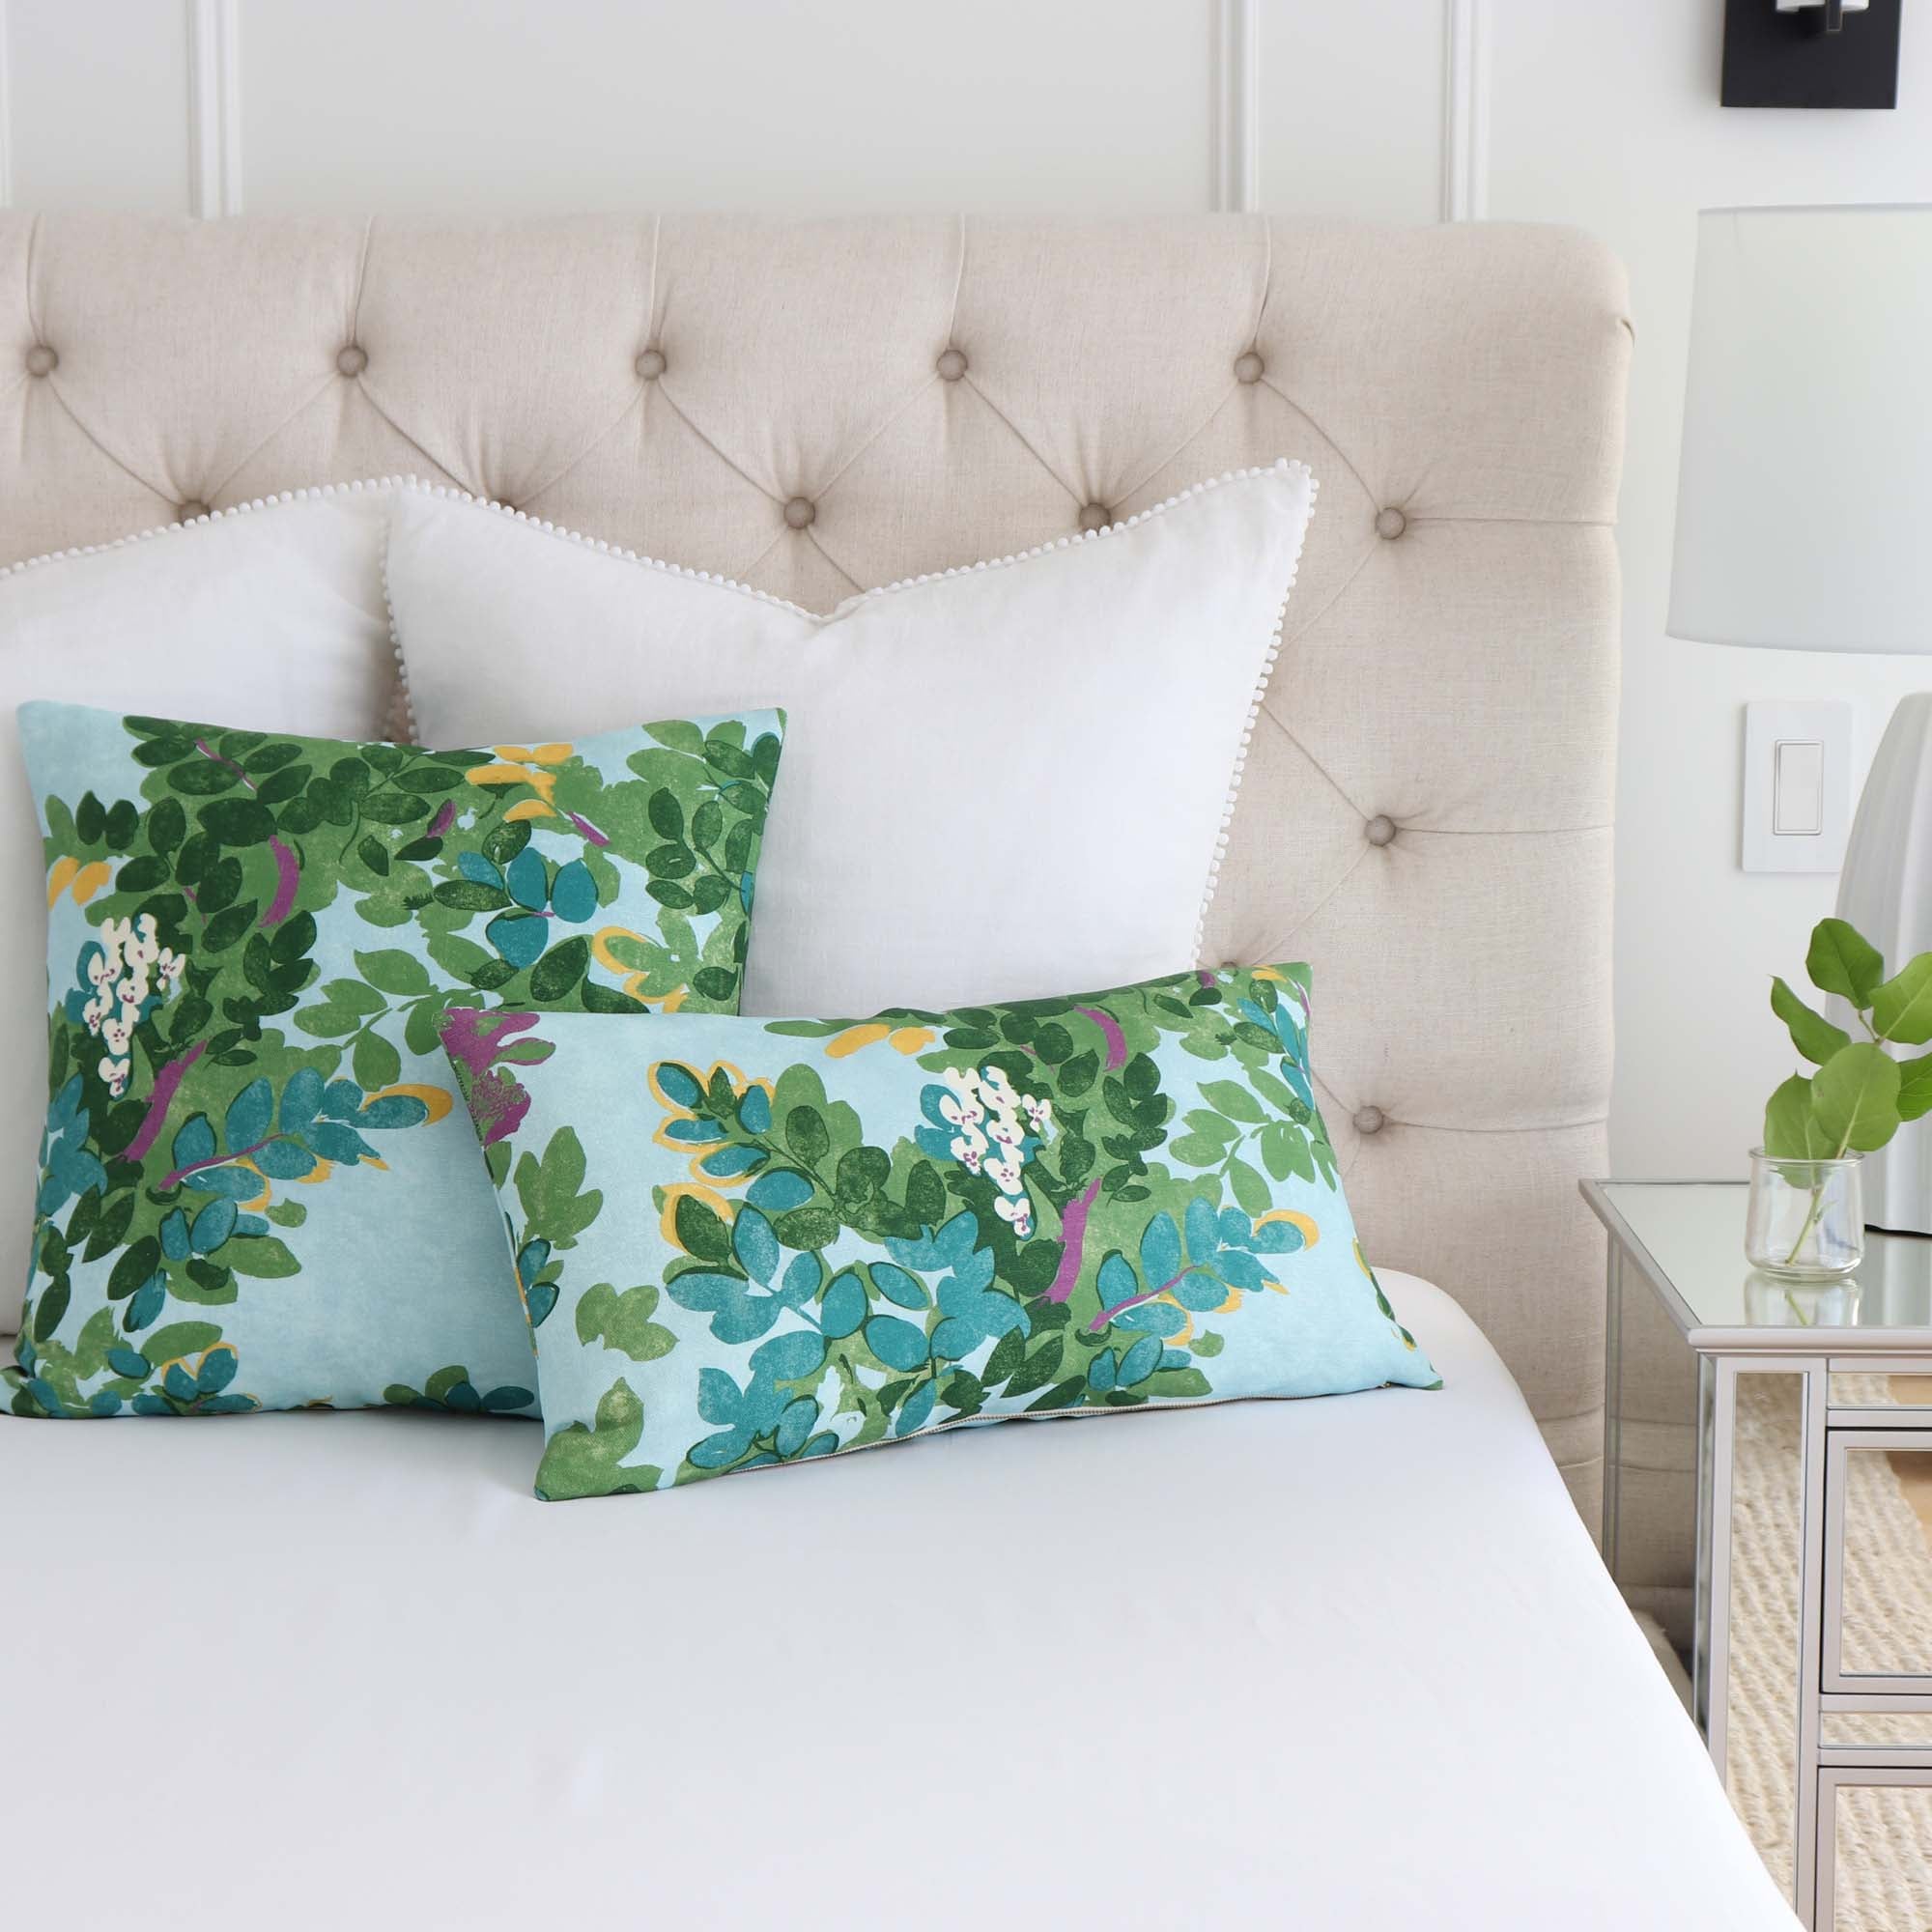 Samali Sky Blue and Green Floral Lumbar Pillow Cover